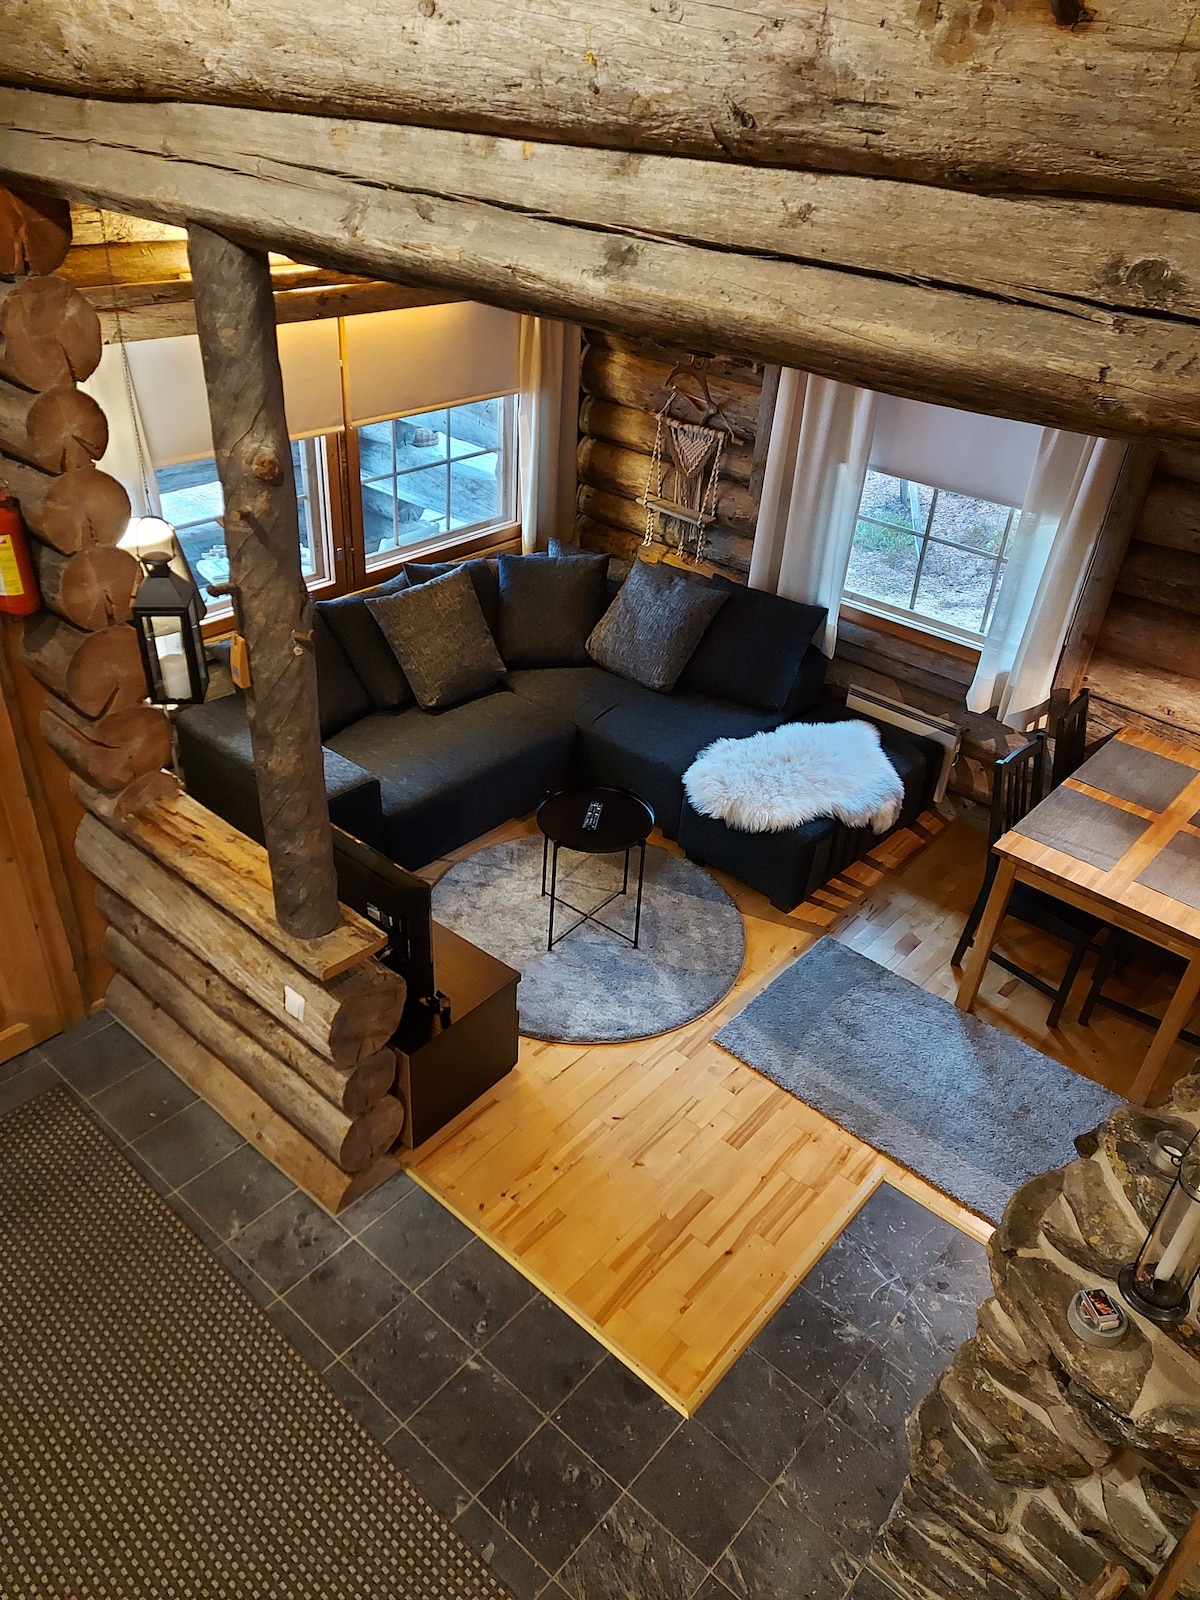 Iso-Syöte Vacation Rentals & Homes - Pudasjärvi, Finland | Airbnb